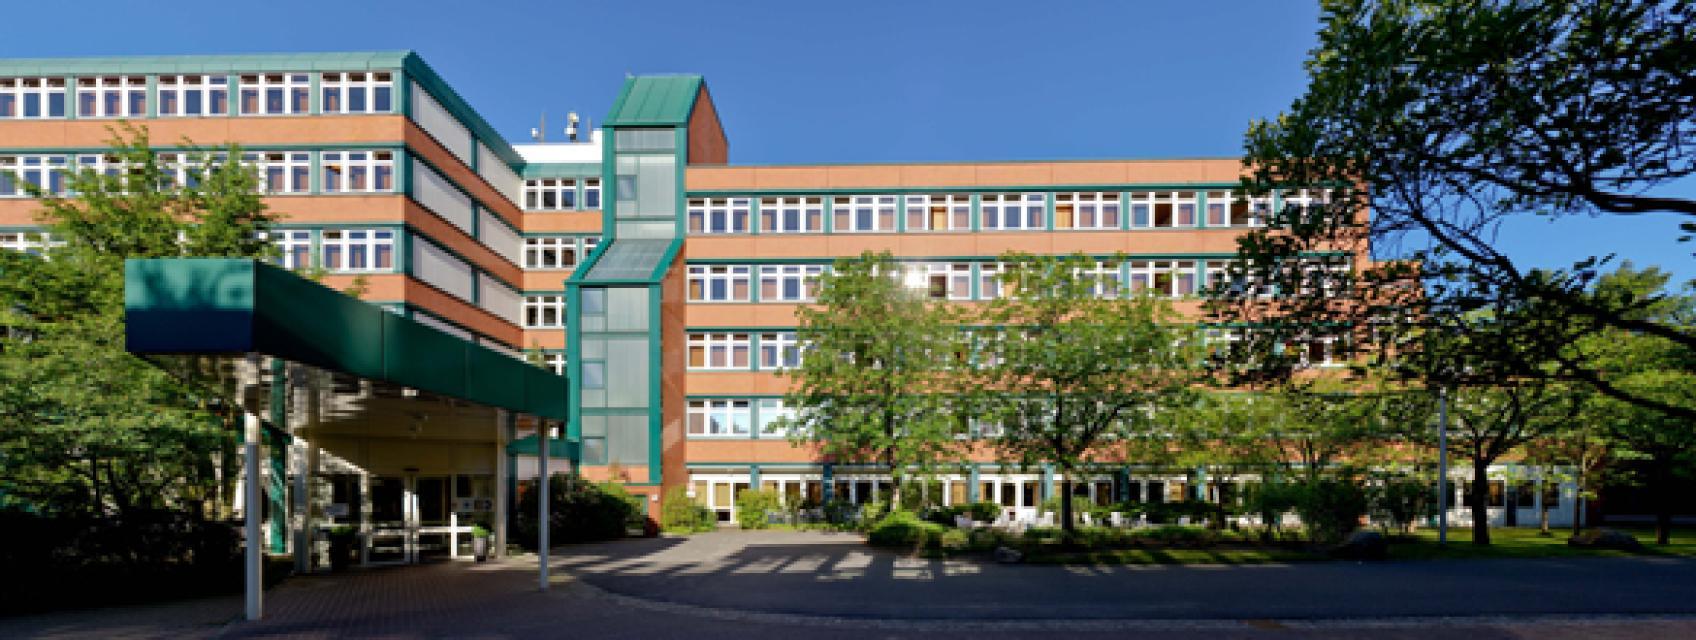 Mit dem MediClin Klinikum Soltau - mit einer möglichen Tagesbehandlungskapazität für 334 Patienten - verfügt Soltau neben dem Krankenhaus für Neurologie und konservative Orthopädie auch über ein großzügiges Rehabilitations-Zentrum mit insgesamt 283 Betten.  